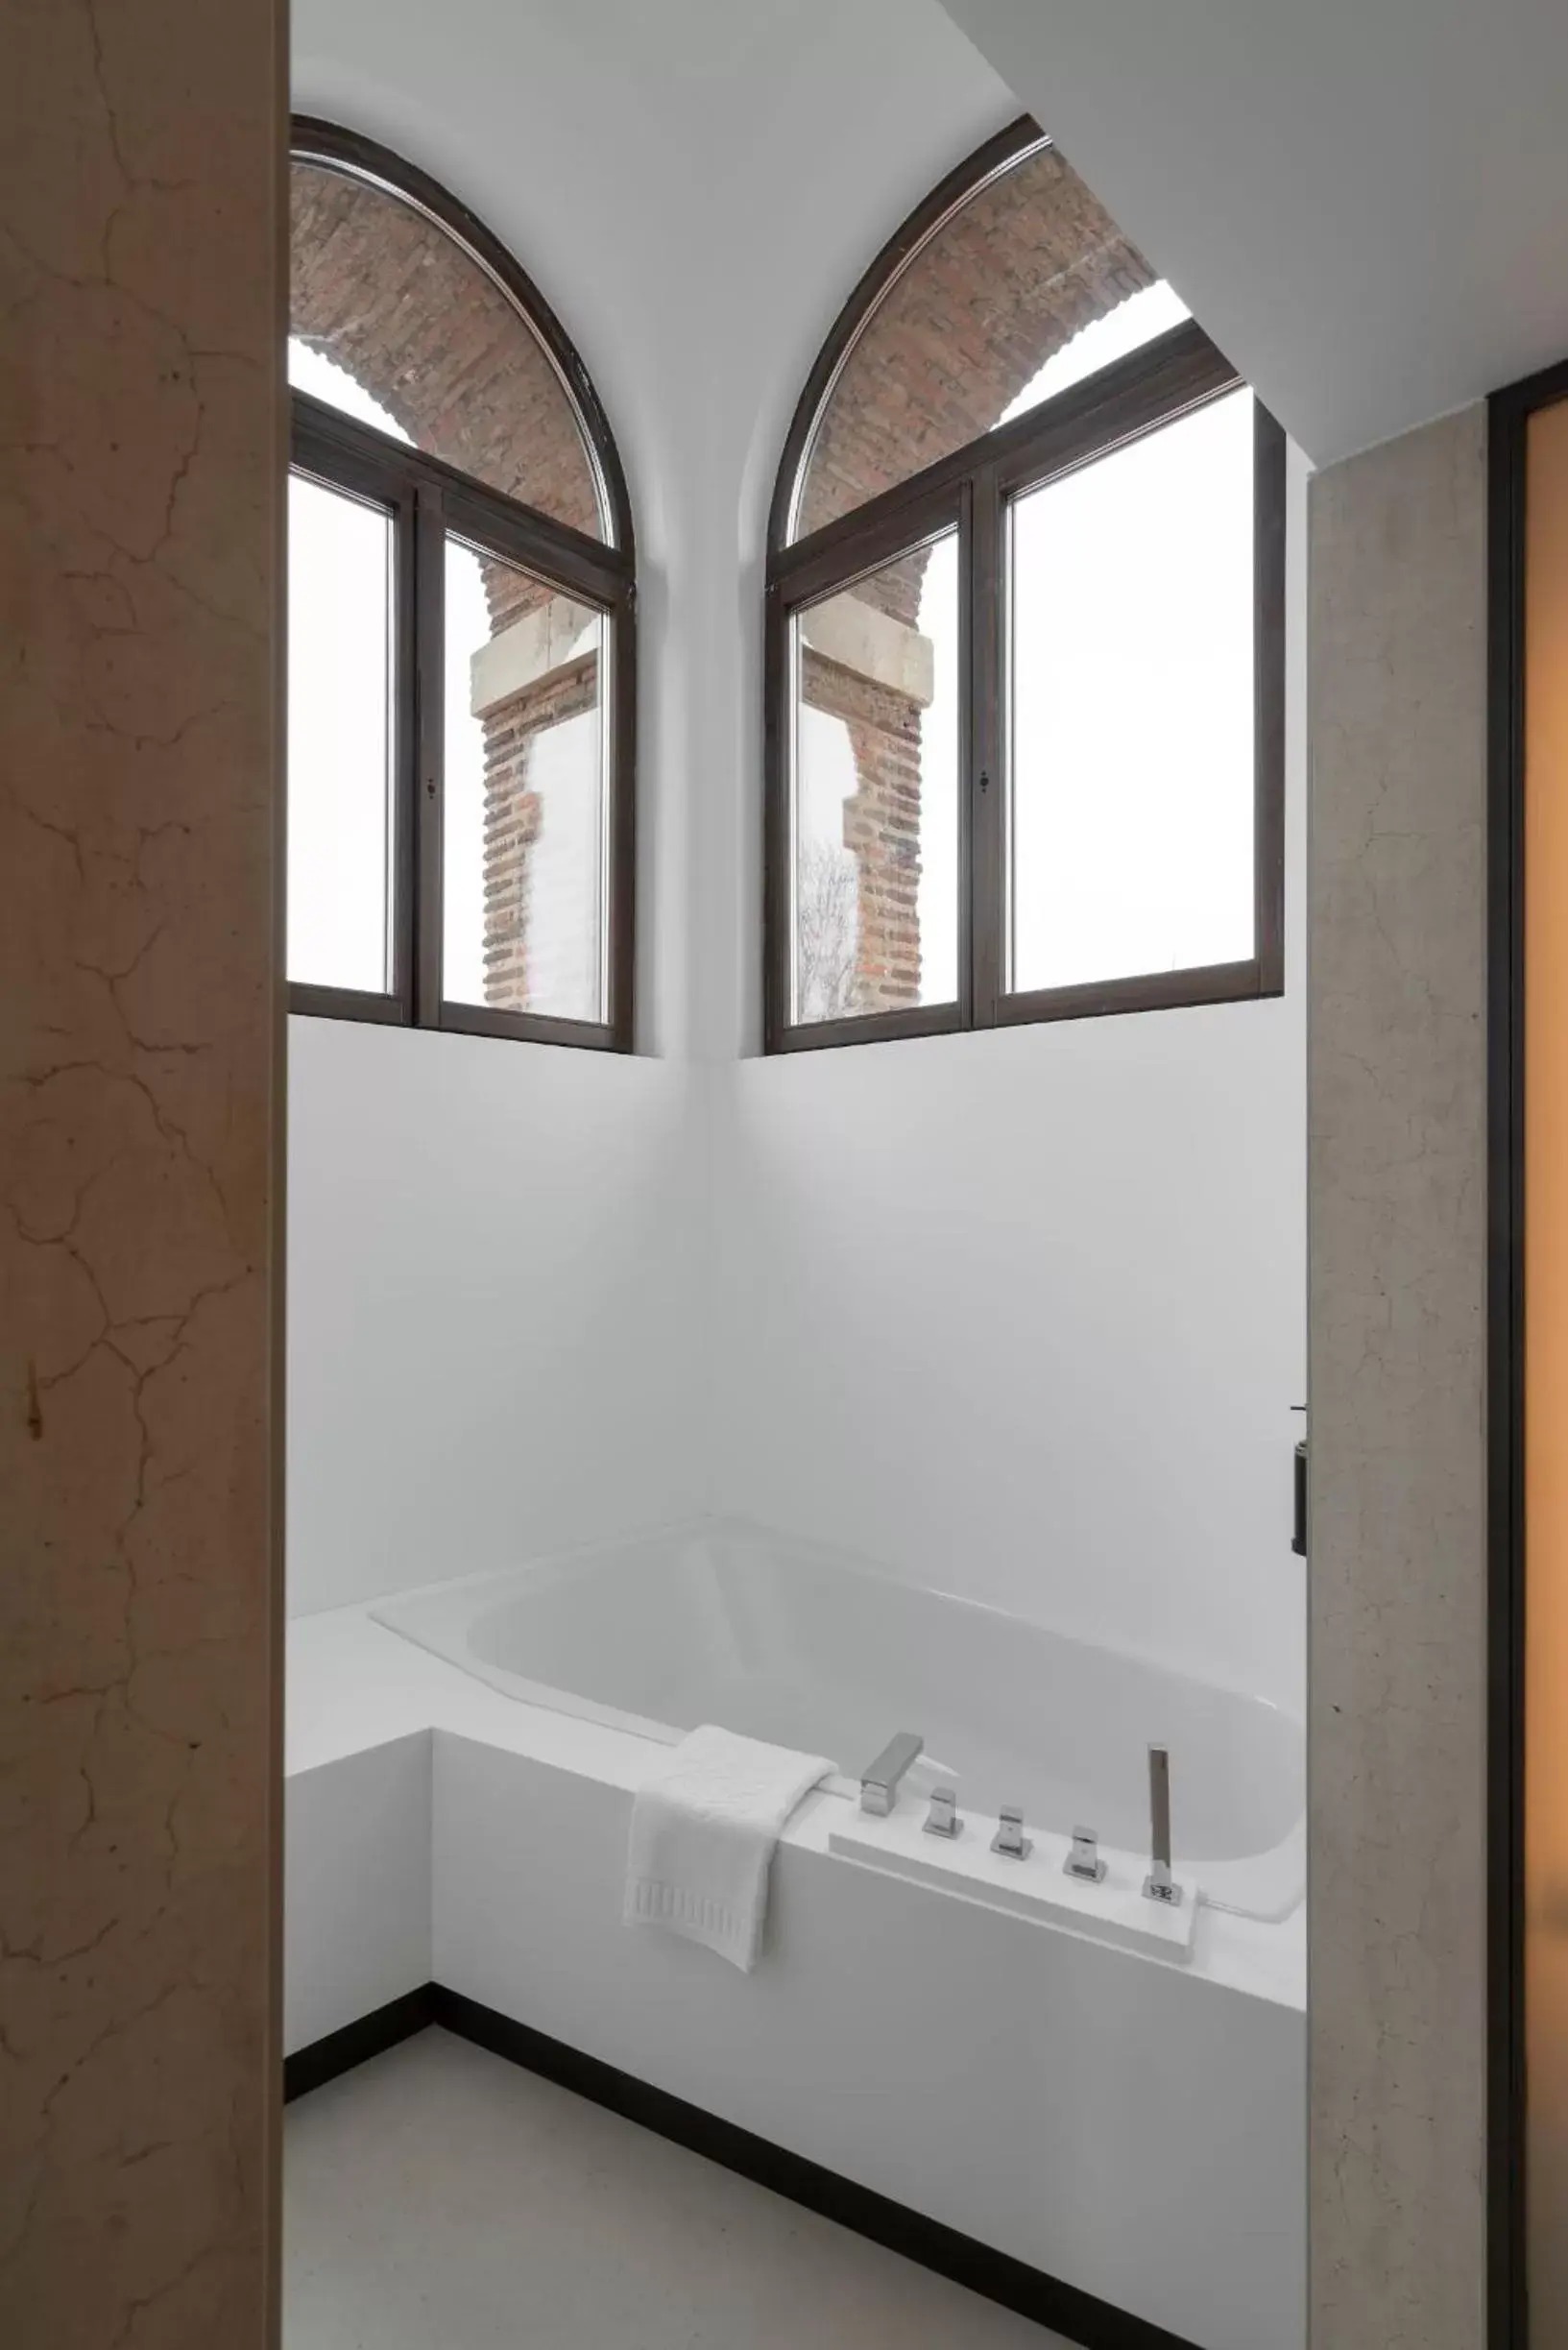 Bathroom in Parador de Turismo de León